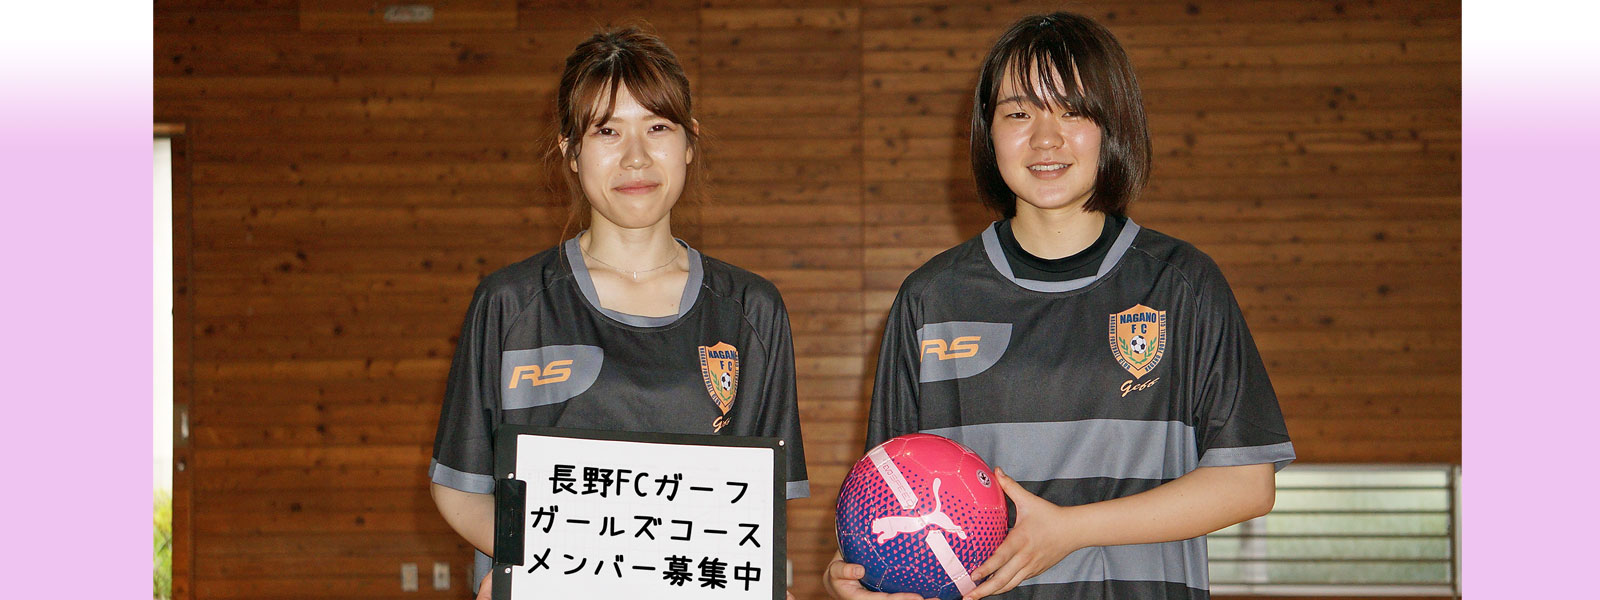 小学生女子限定で活動するサッカーチーム、はじめました